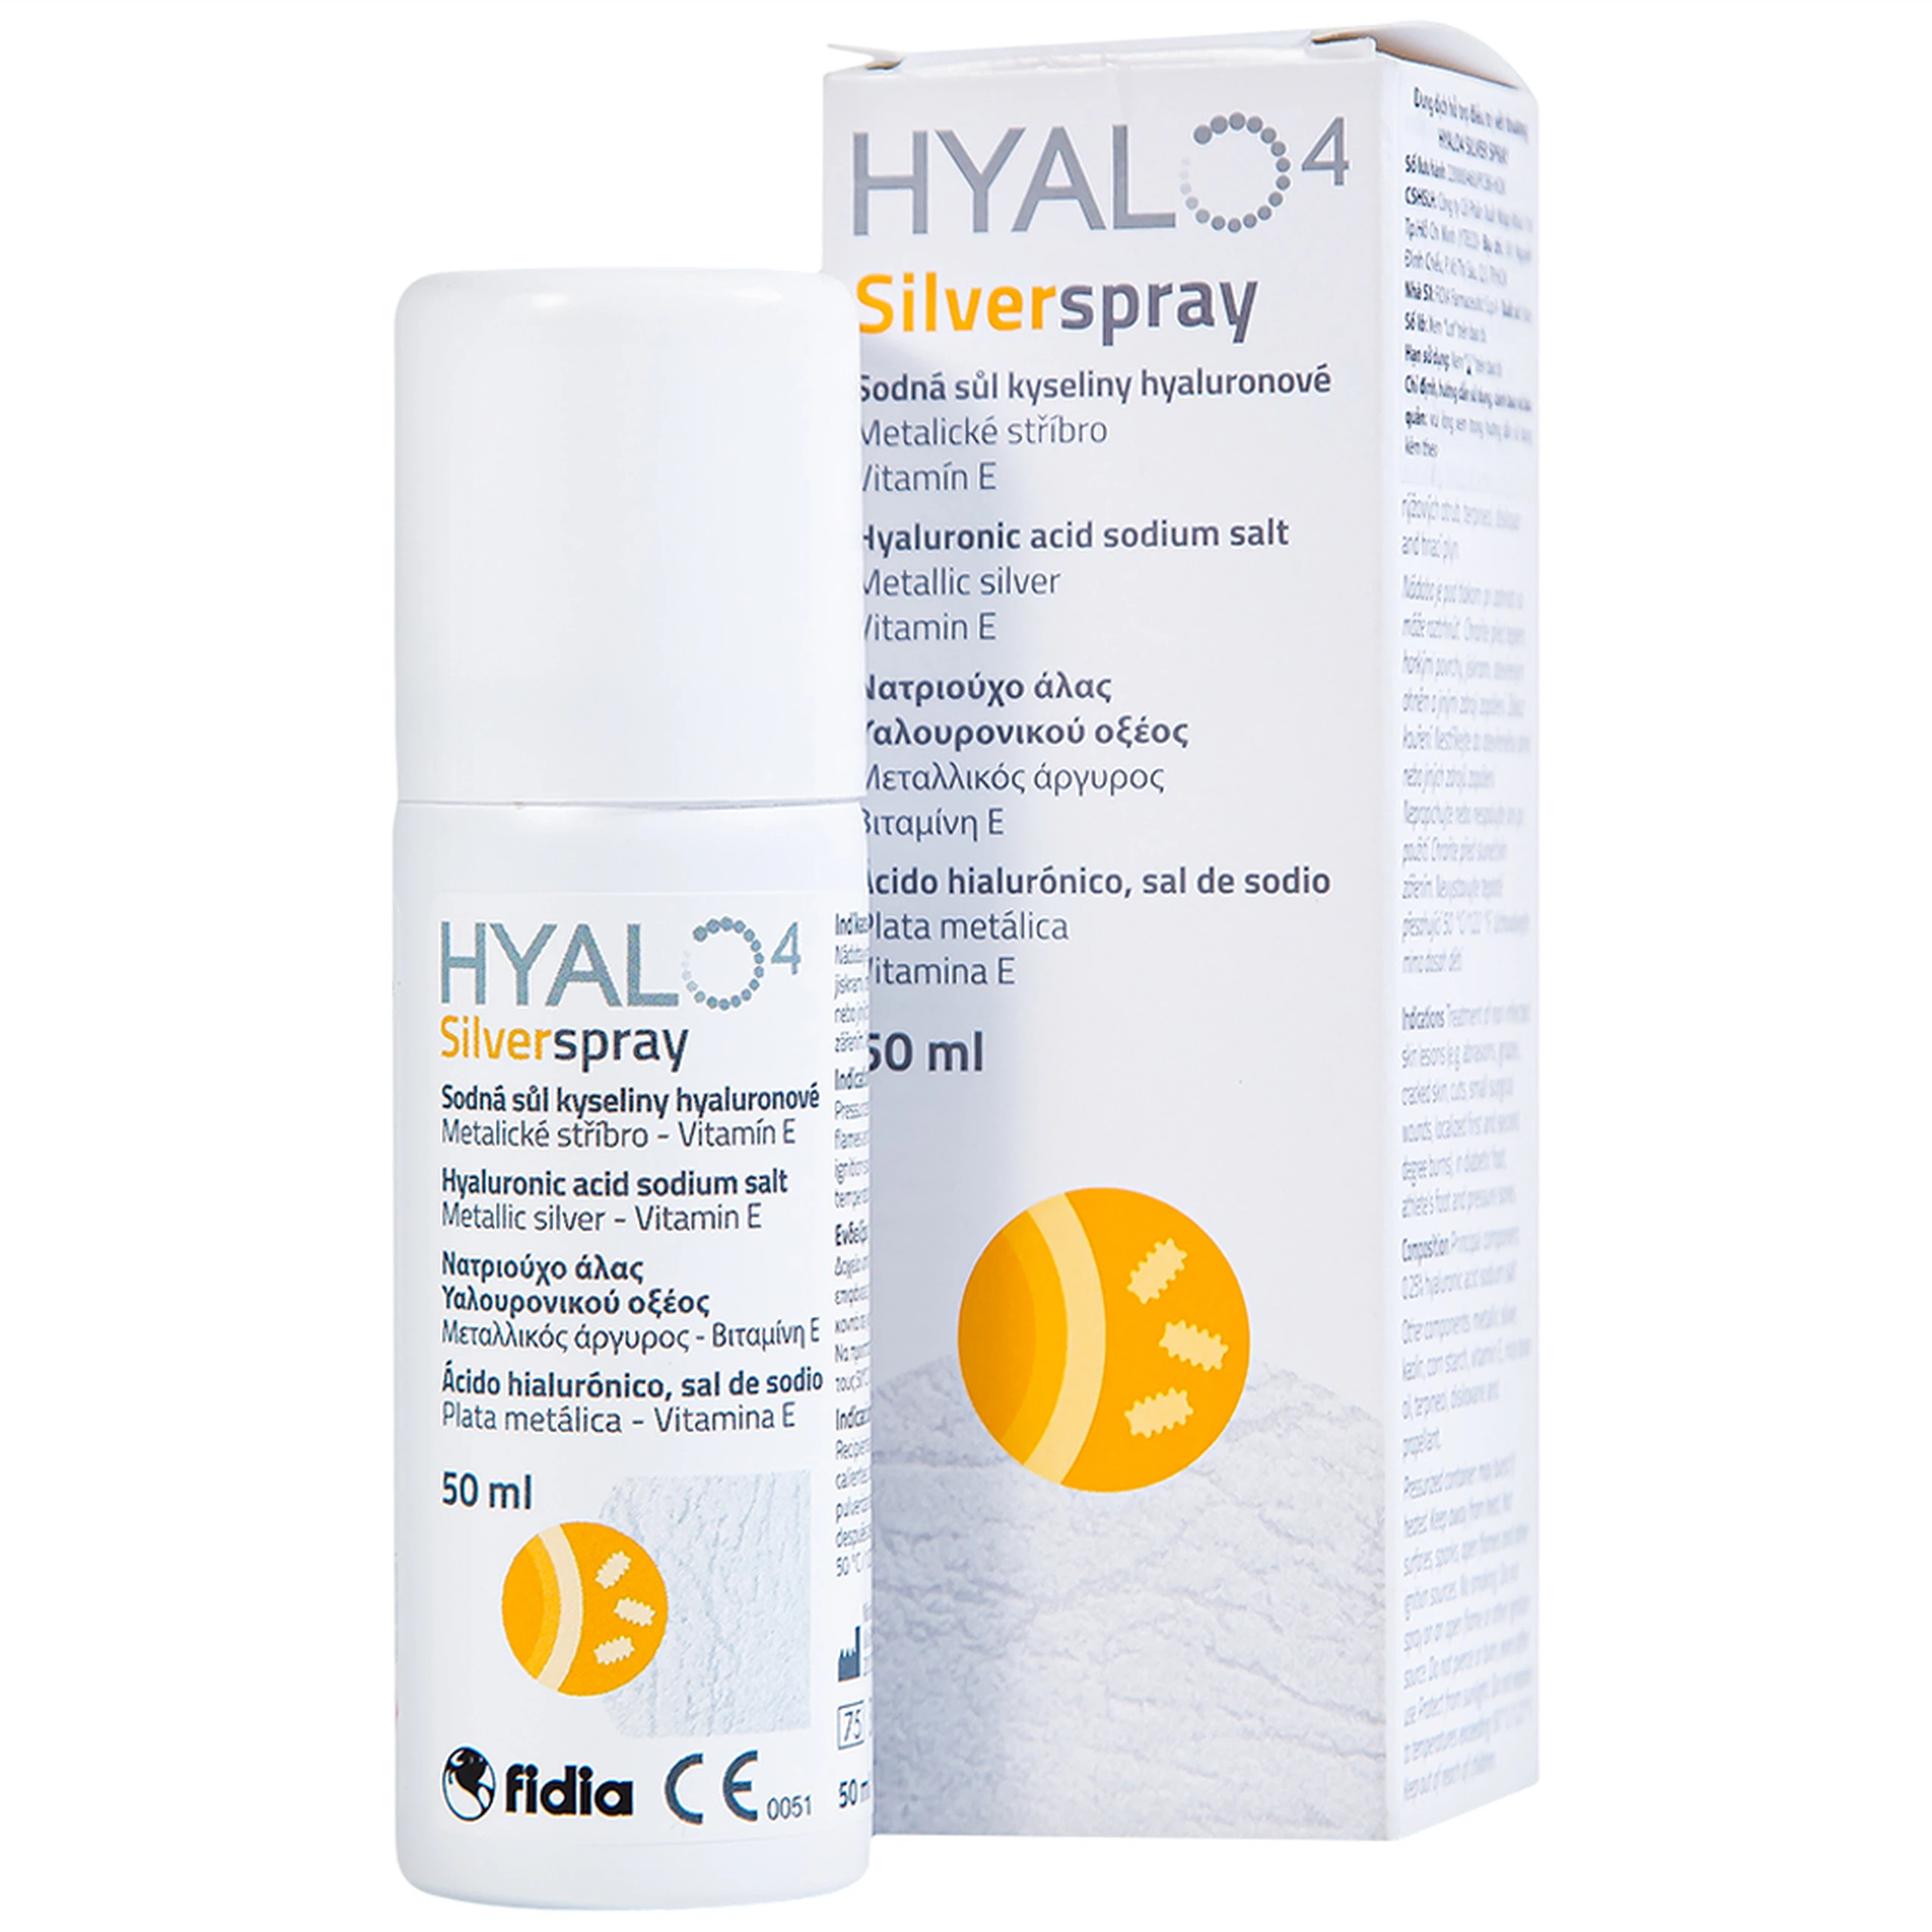 Chai xịt Hyalo4 Silver Spray hỗ trợ điều trị vết thương (50ml)